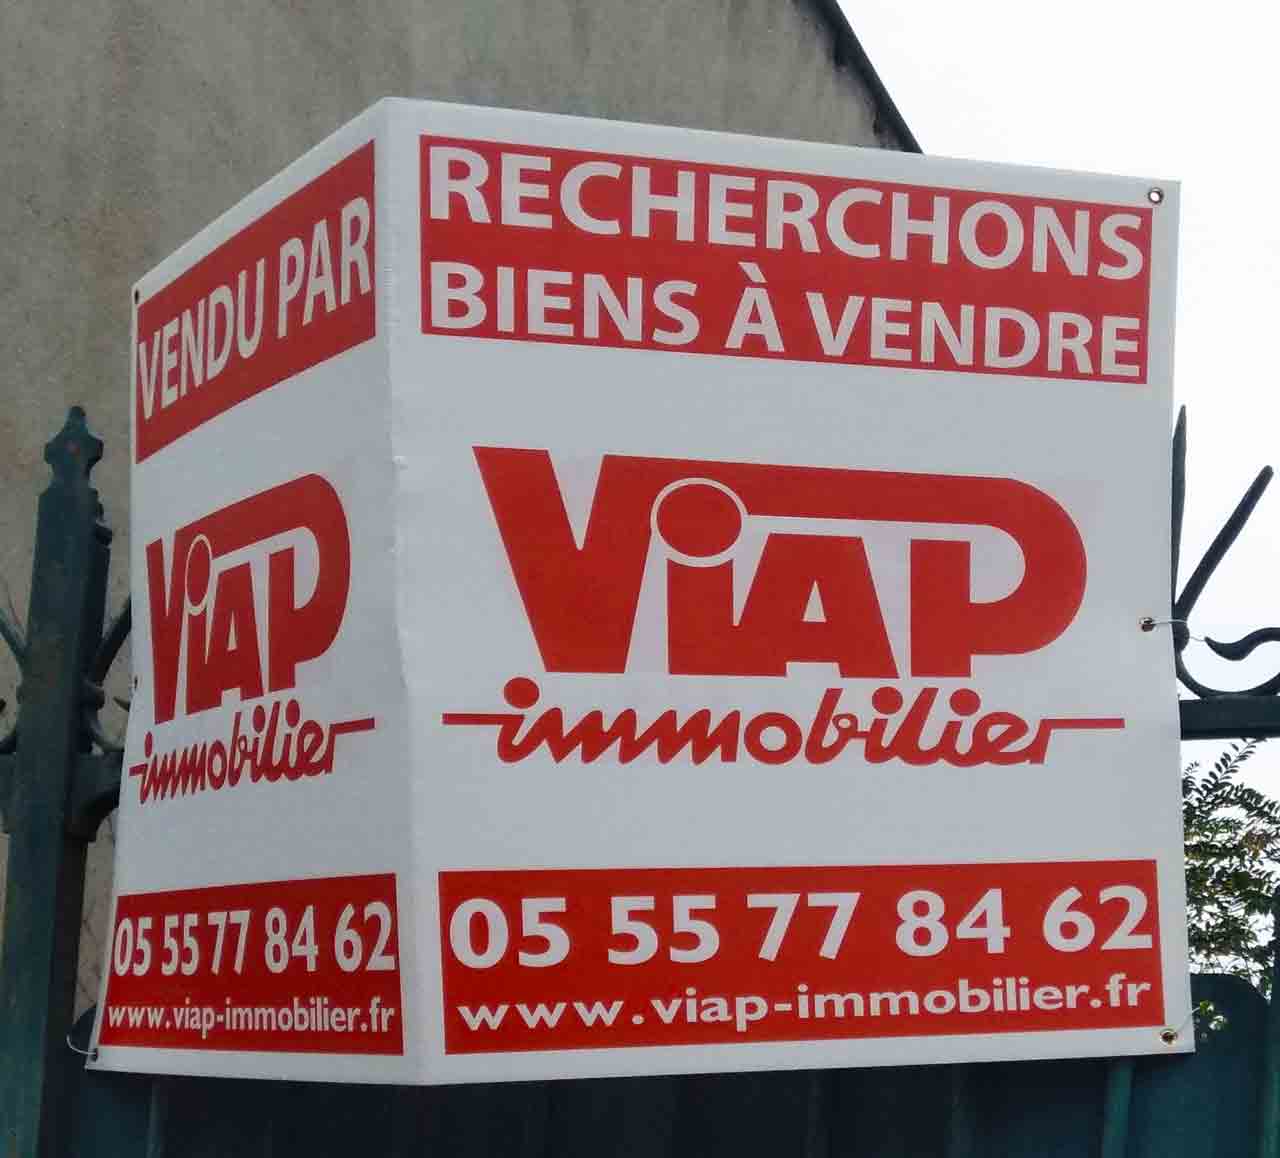 Le logo Viap en situation sur un panneau en octobre 2020. Marc-André